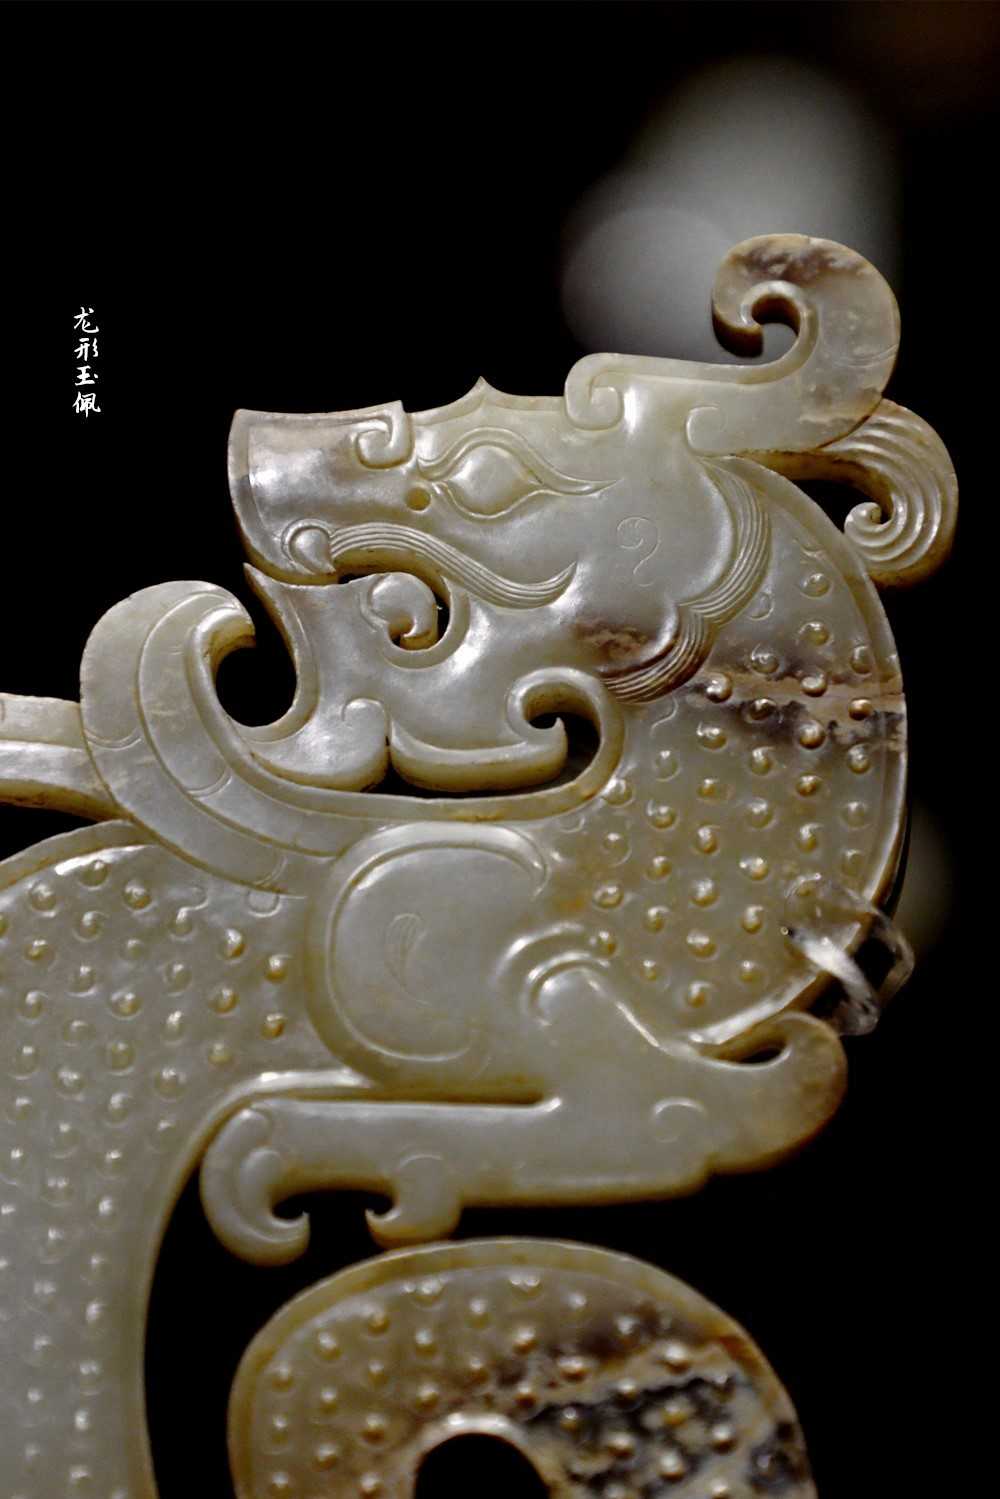 王牌讲解员 的想法: #河北博物院# #徐州汉代玉器精品